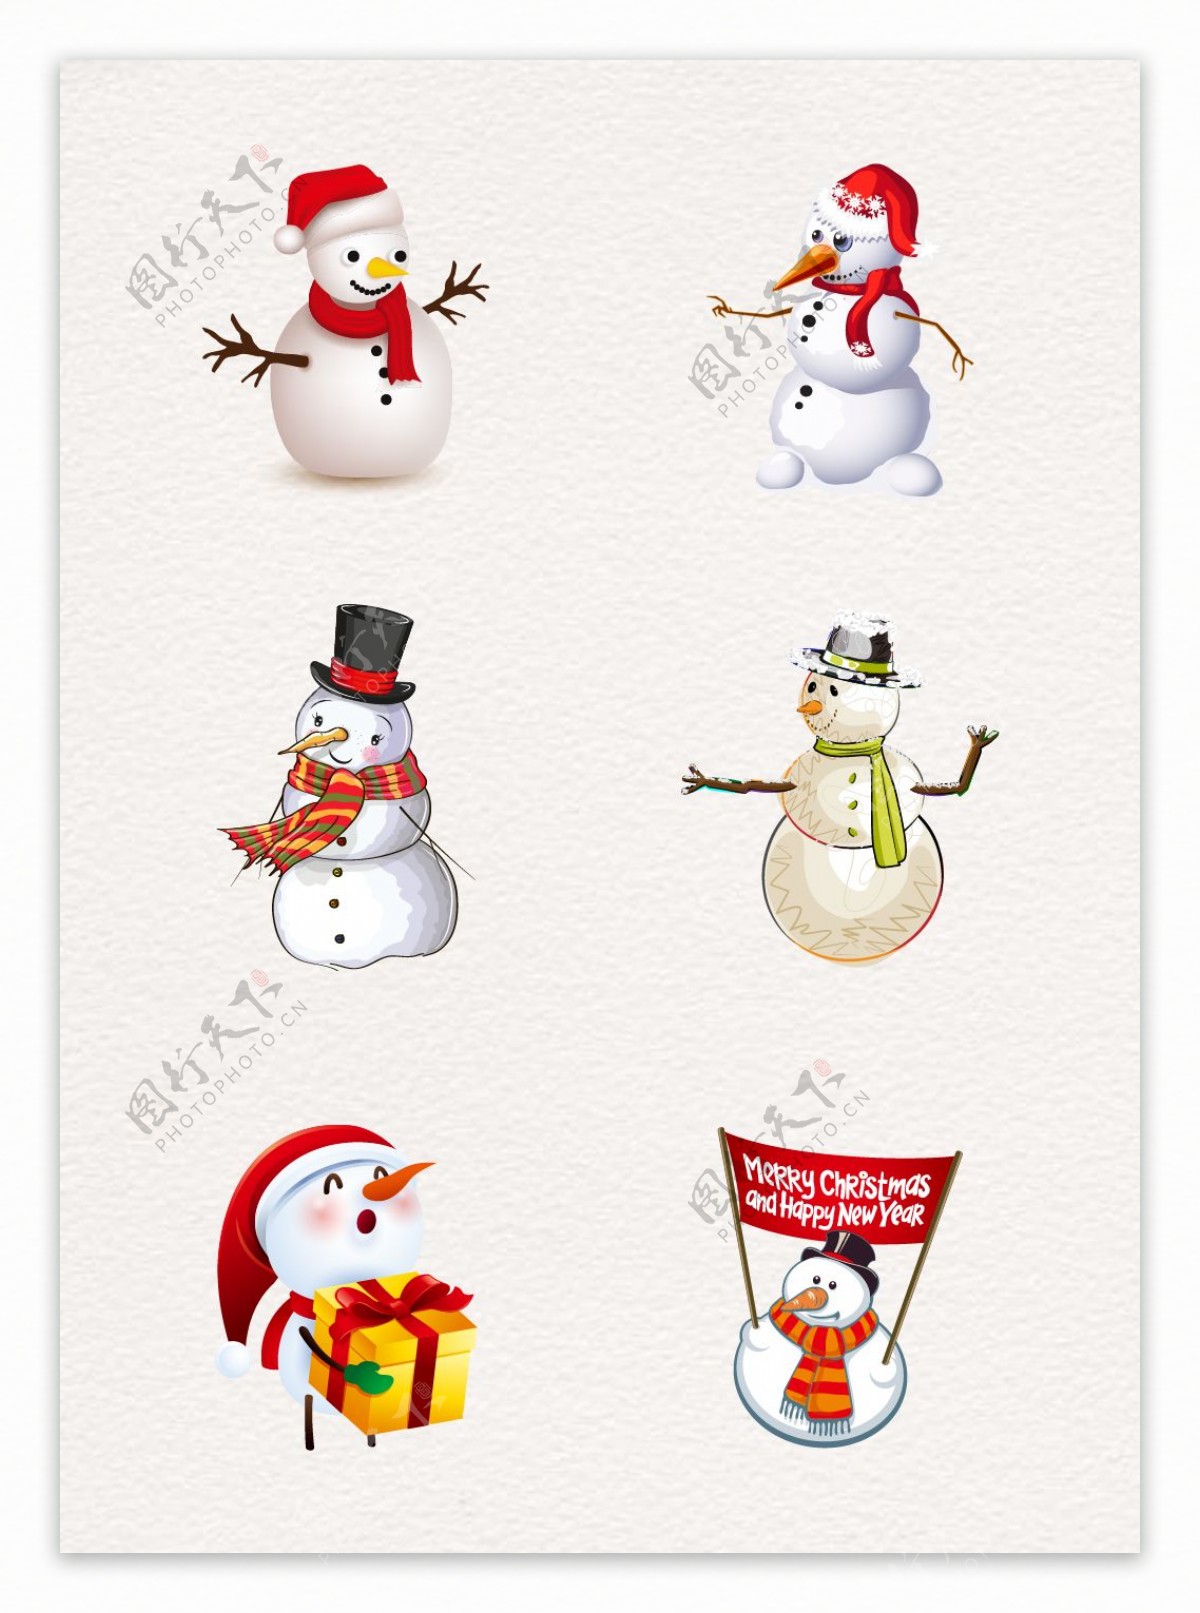 卡通小清新冬季圣诞装扮雪人设计